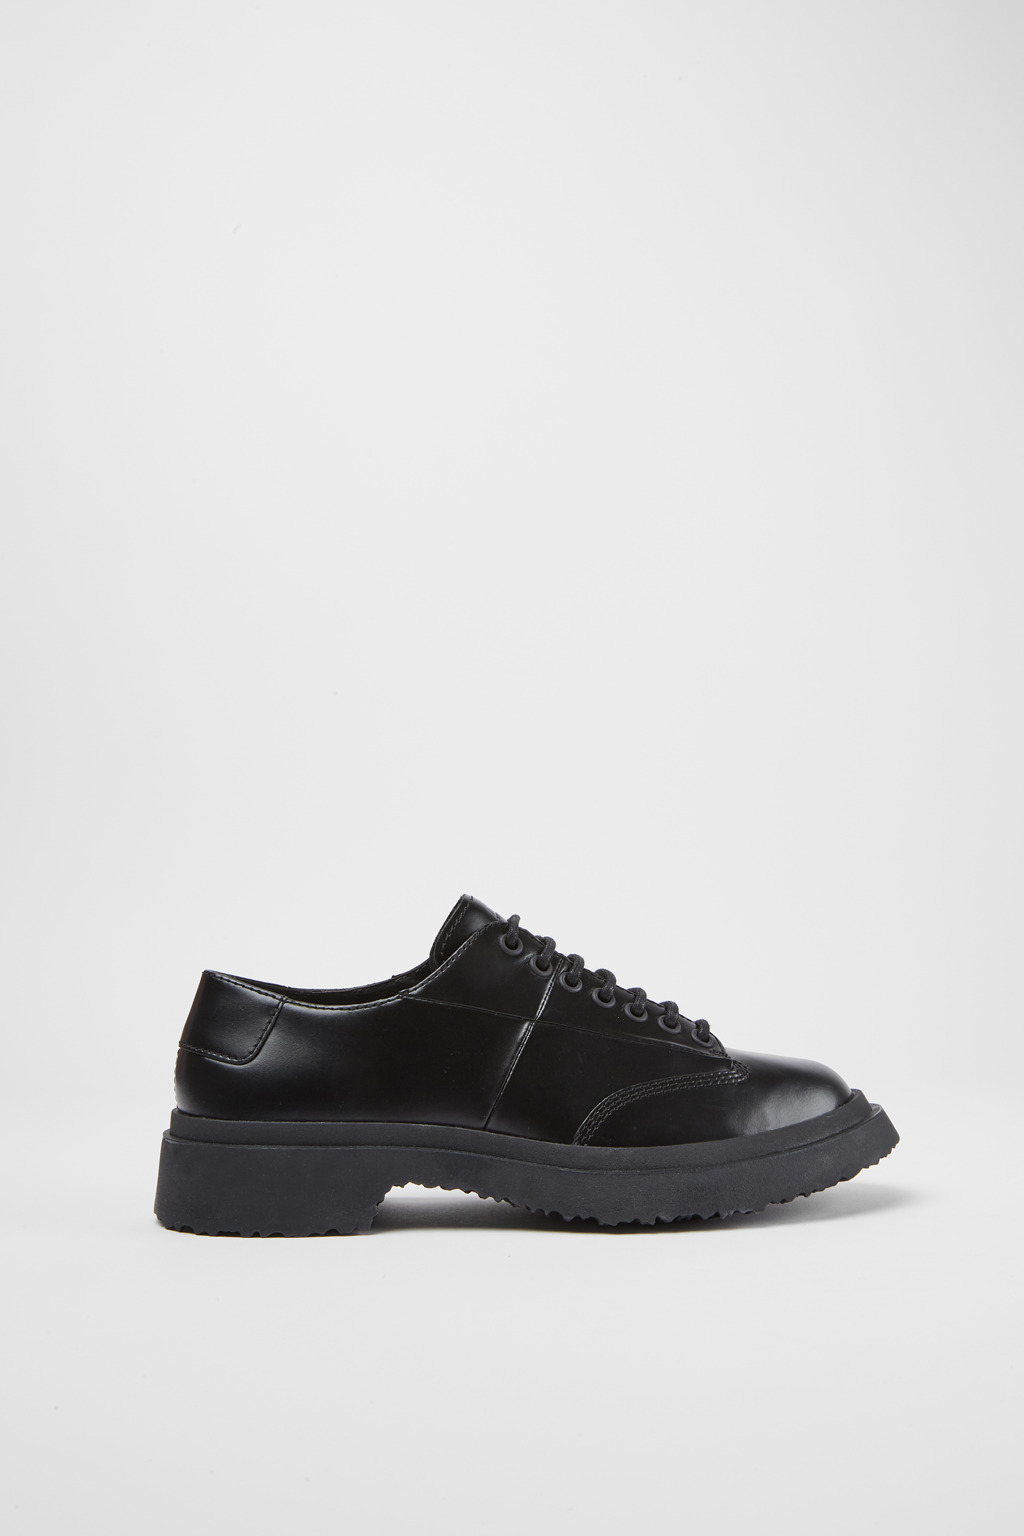 Walden Black Formal Shoes for Women - Camper Shoes